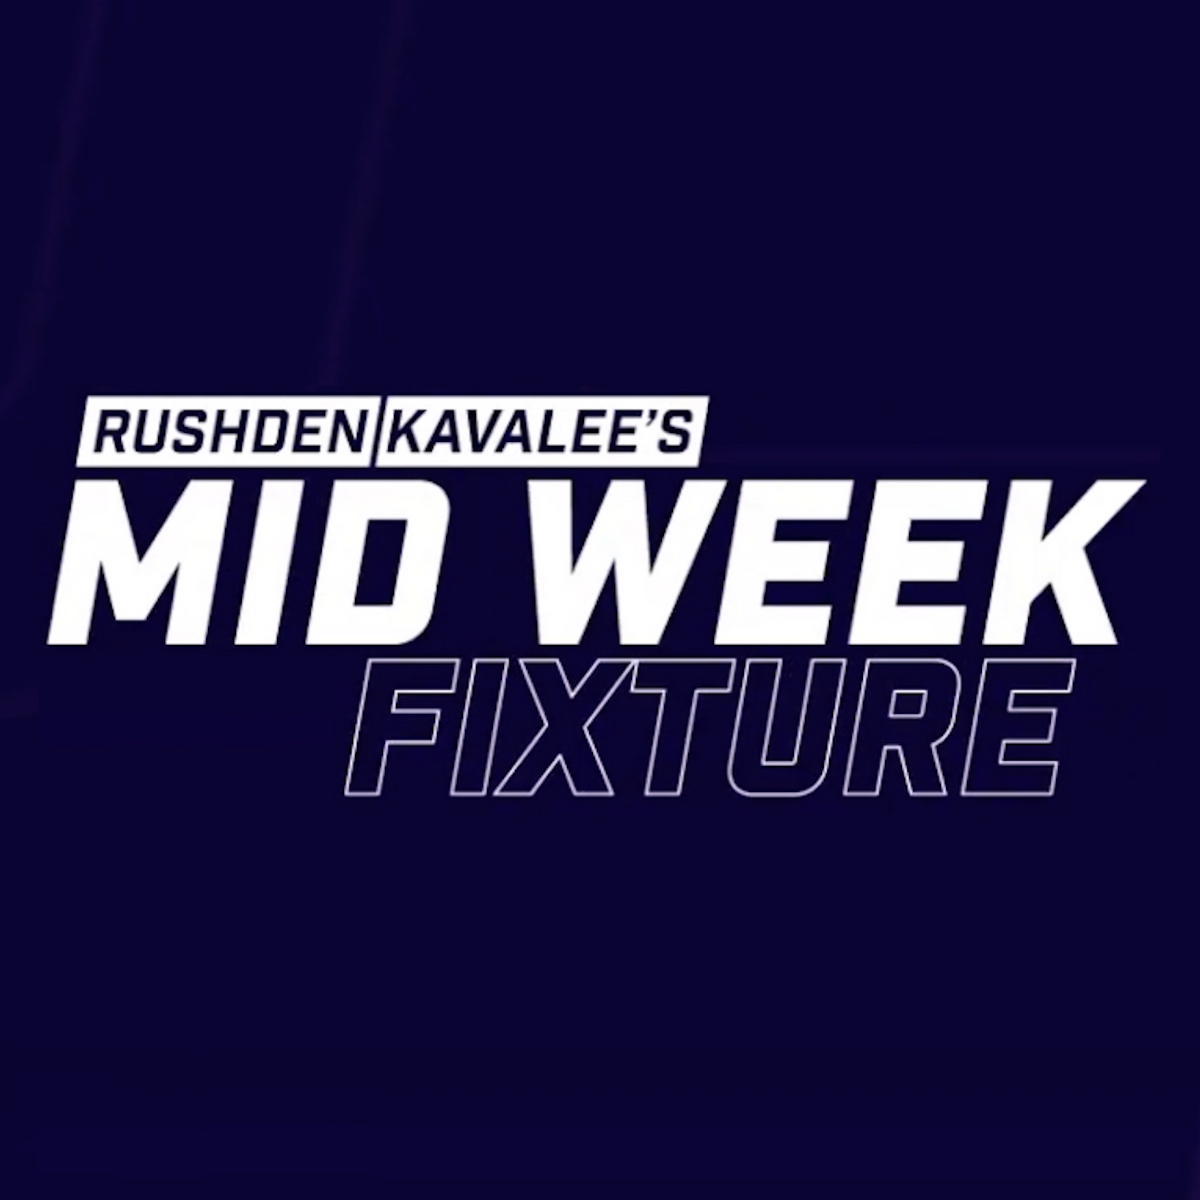 NEW POD: Rushden / Kavalee's Mid Week Fixture - 15 October 2020